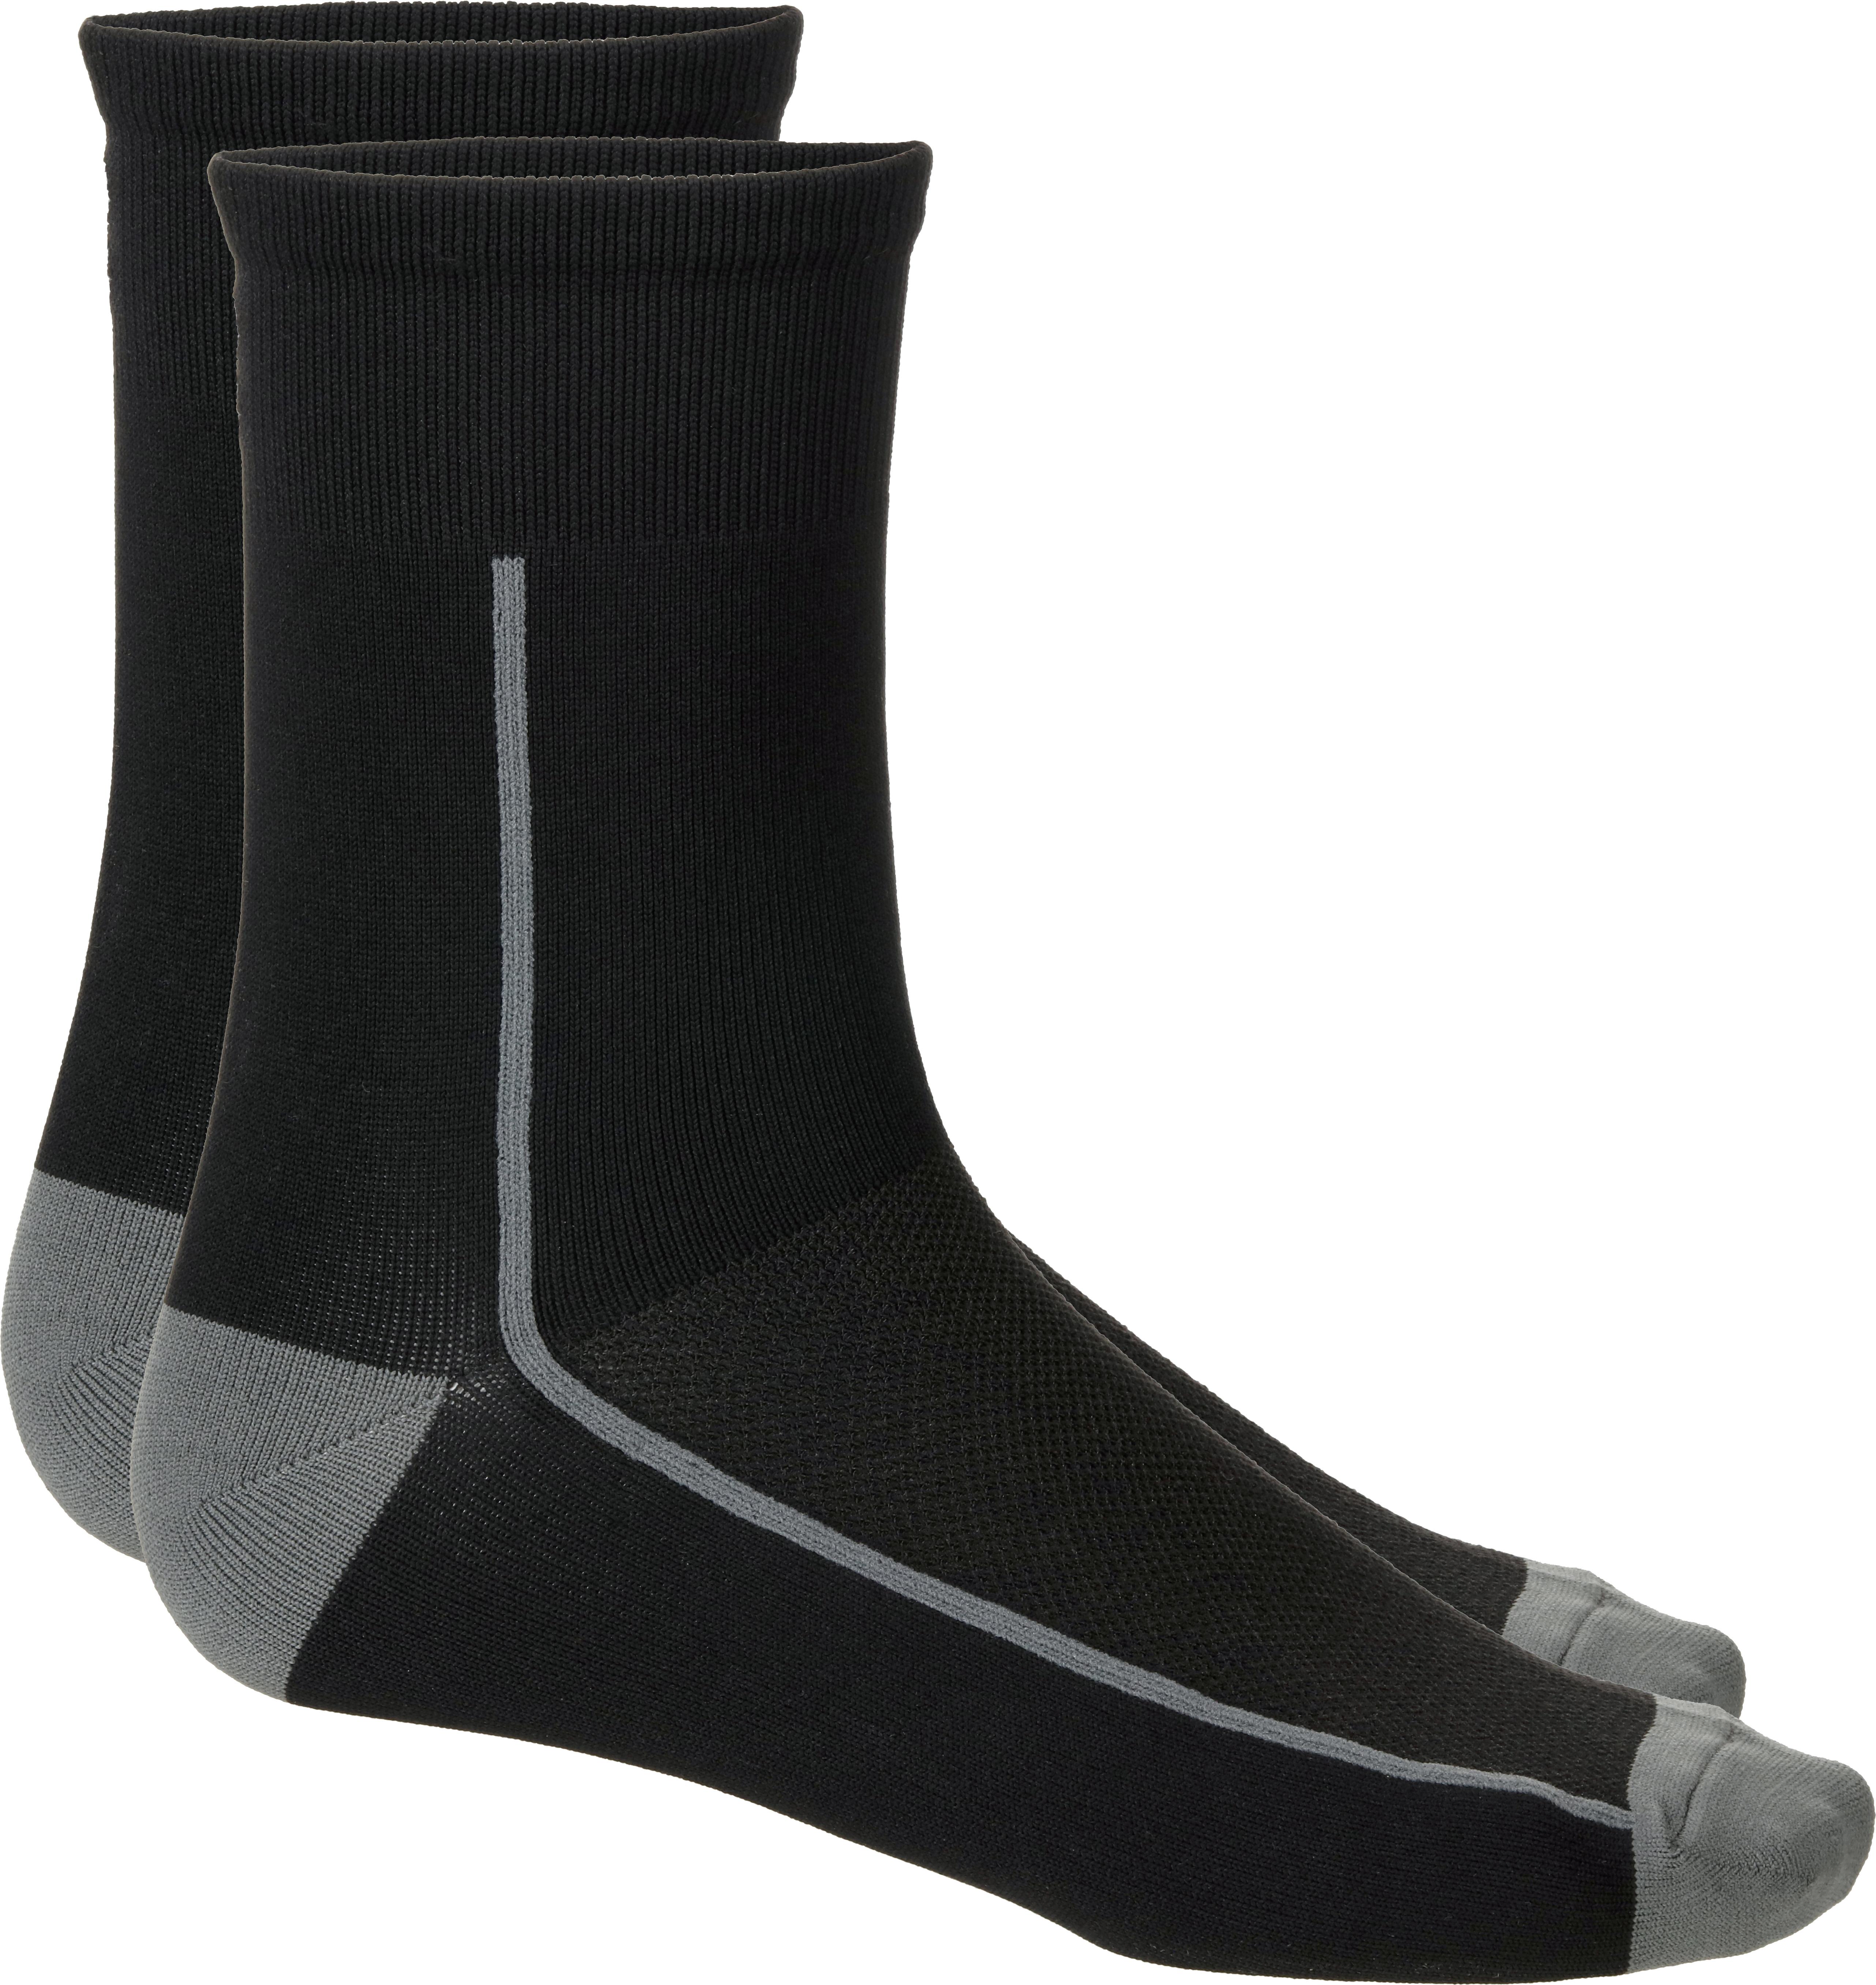 Boardman Mens Socks - Grey (2 Pack) - L/Xl